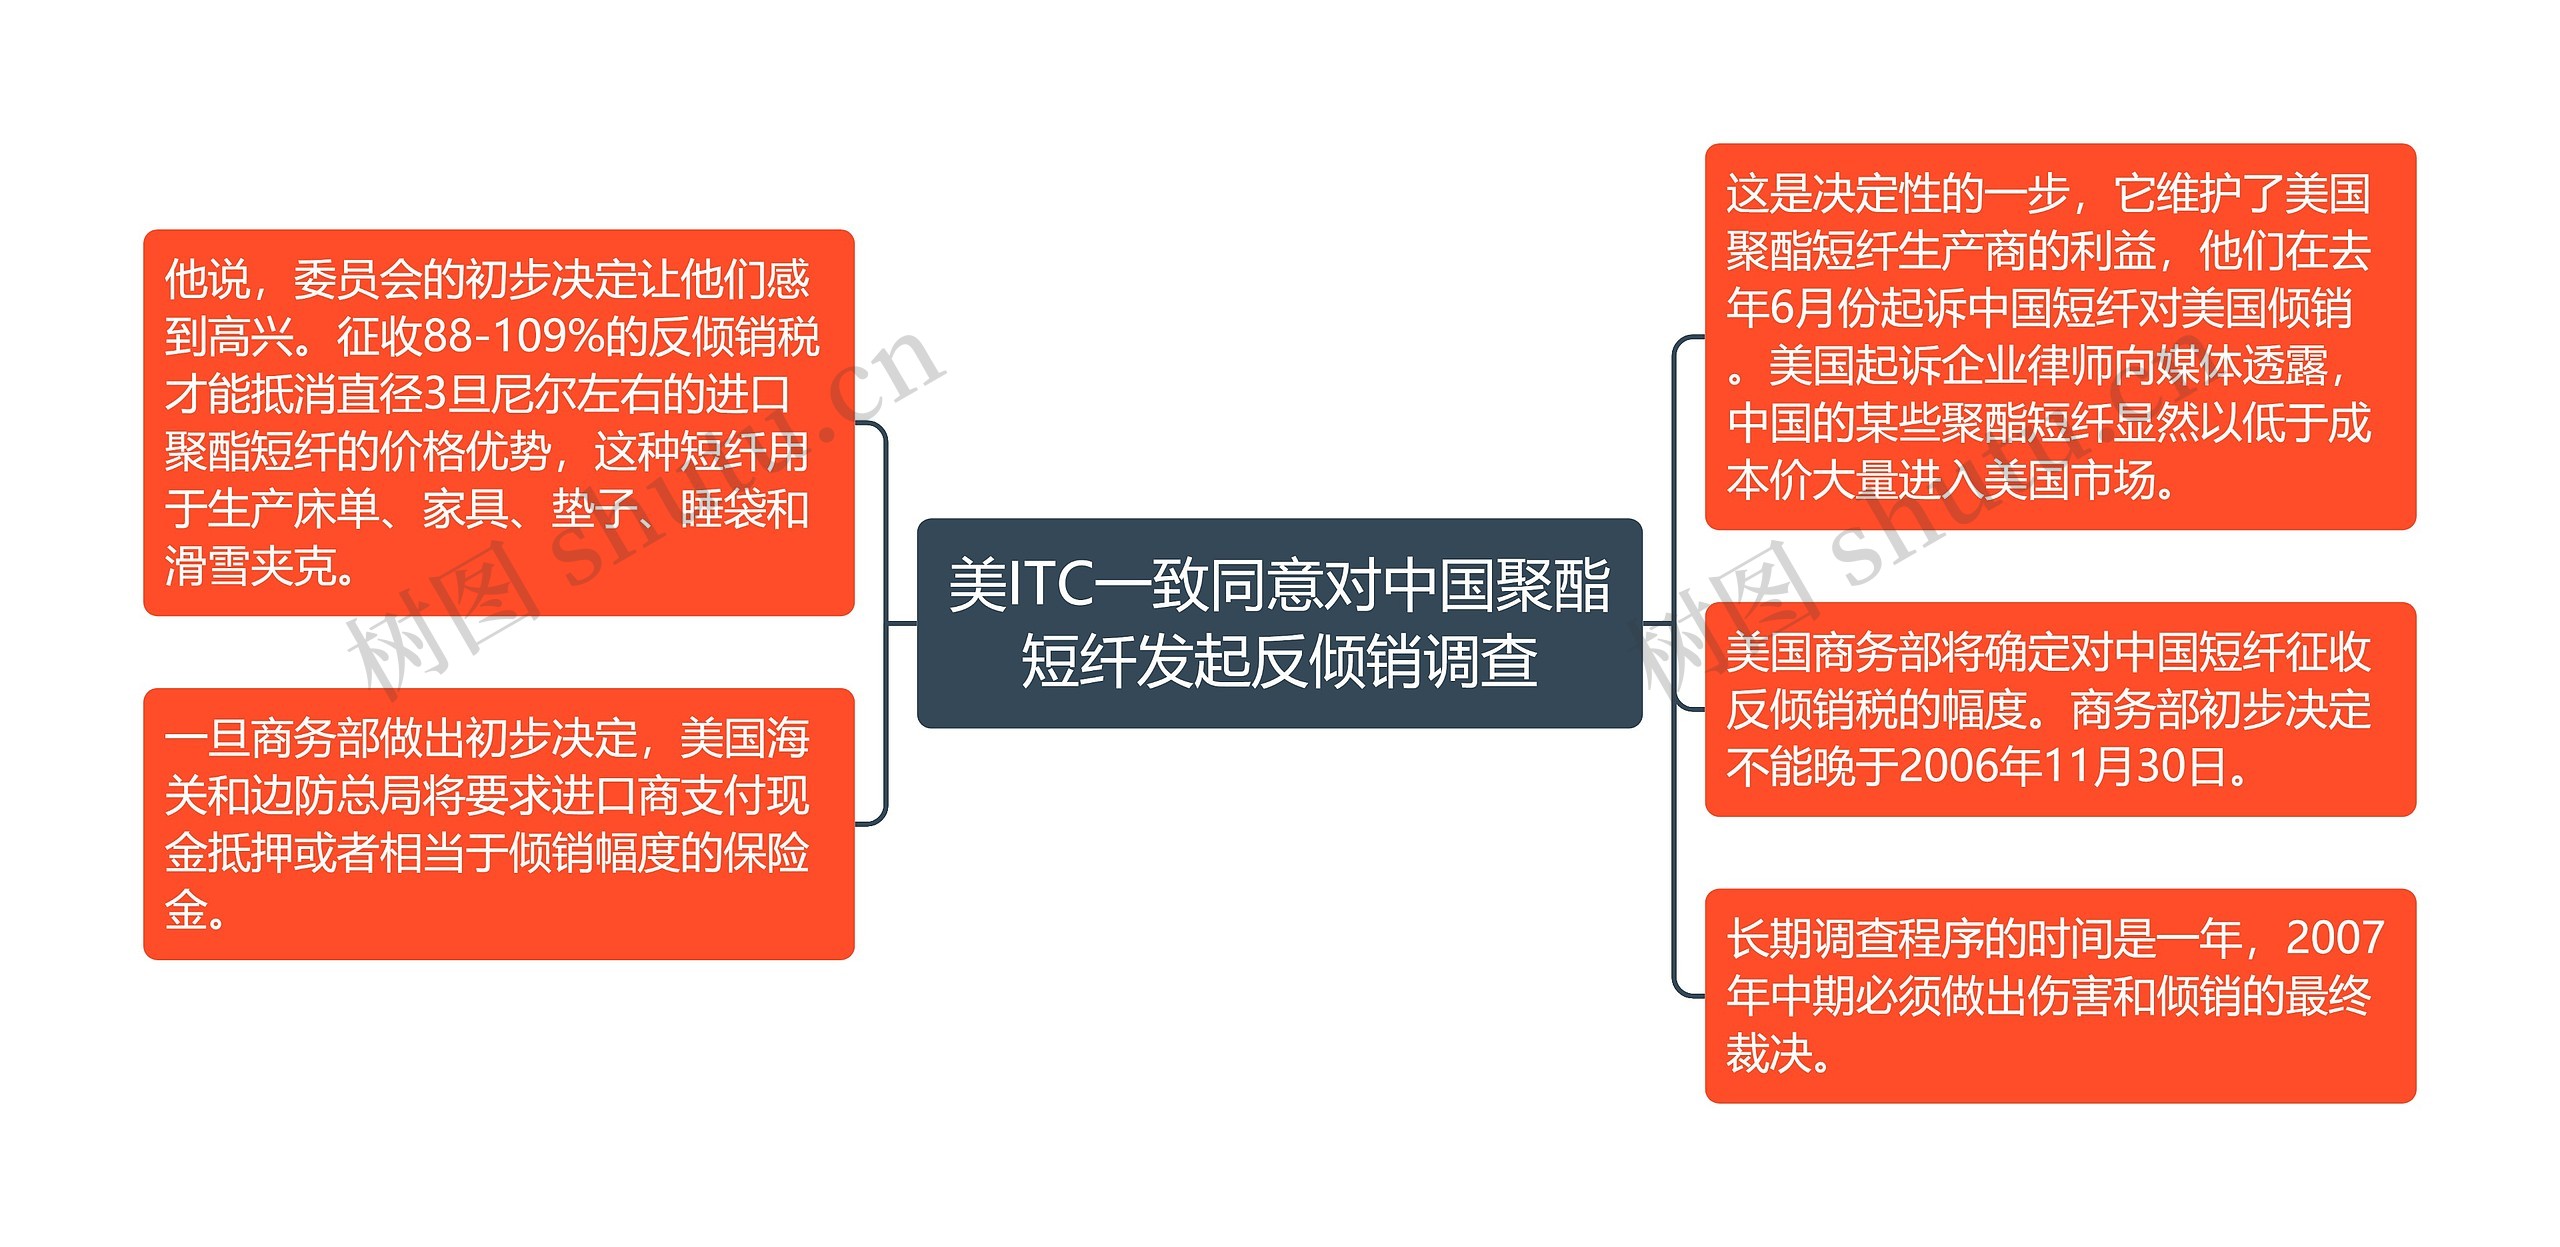 美ITC一致同意对中国聚酯短纤发起反倾销调查思维导图